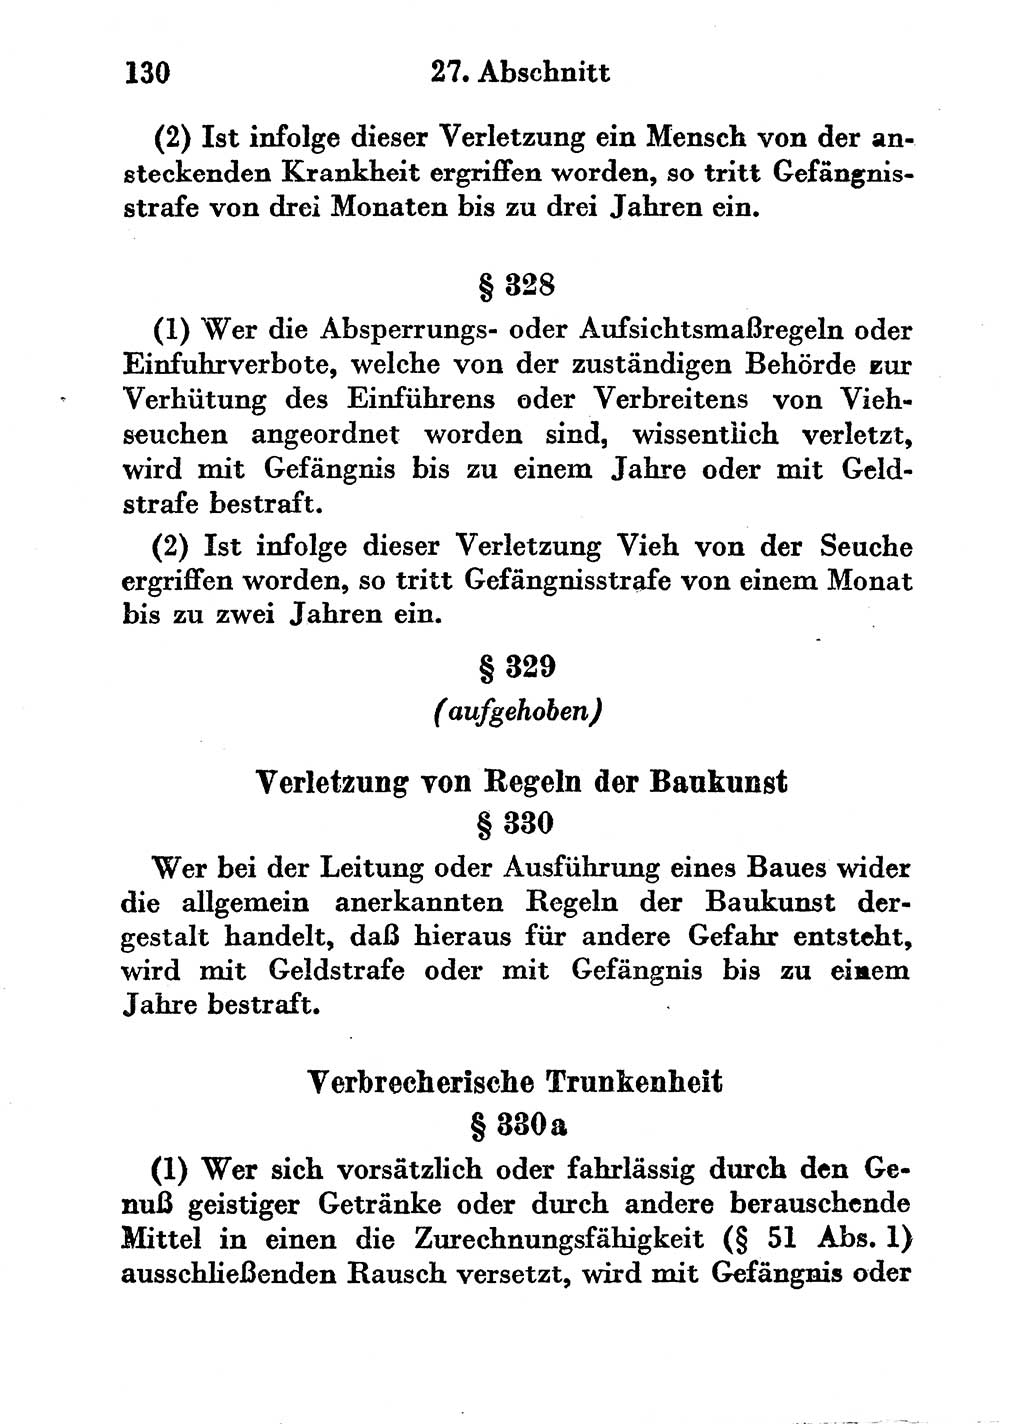 Strafgesetzbuch (StGB) und andere Strafgesetze [Deutsche Demokratische Republik (DDR)] 1956, Seite 130 (StGB Strafges. DDR 1956, S. 130)